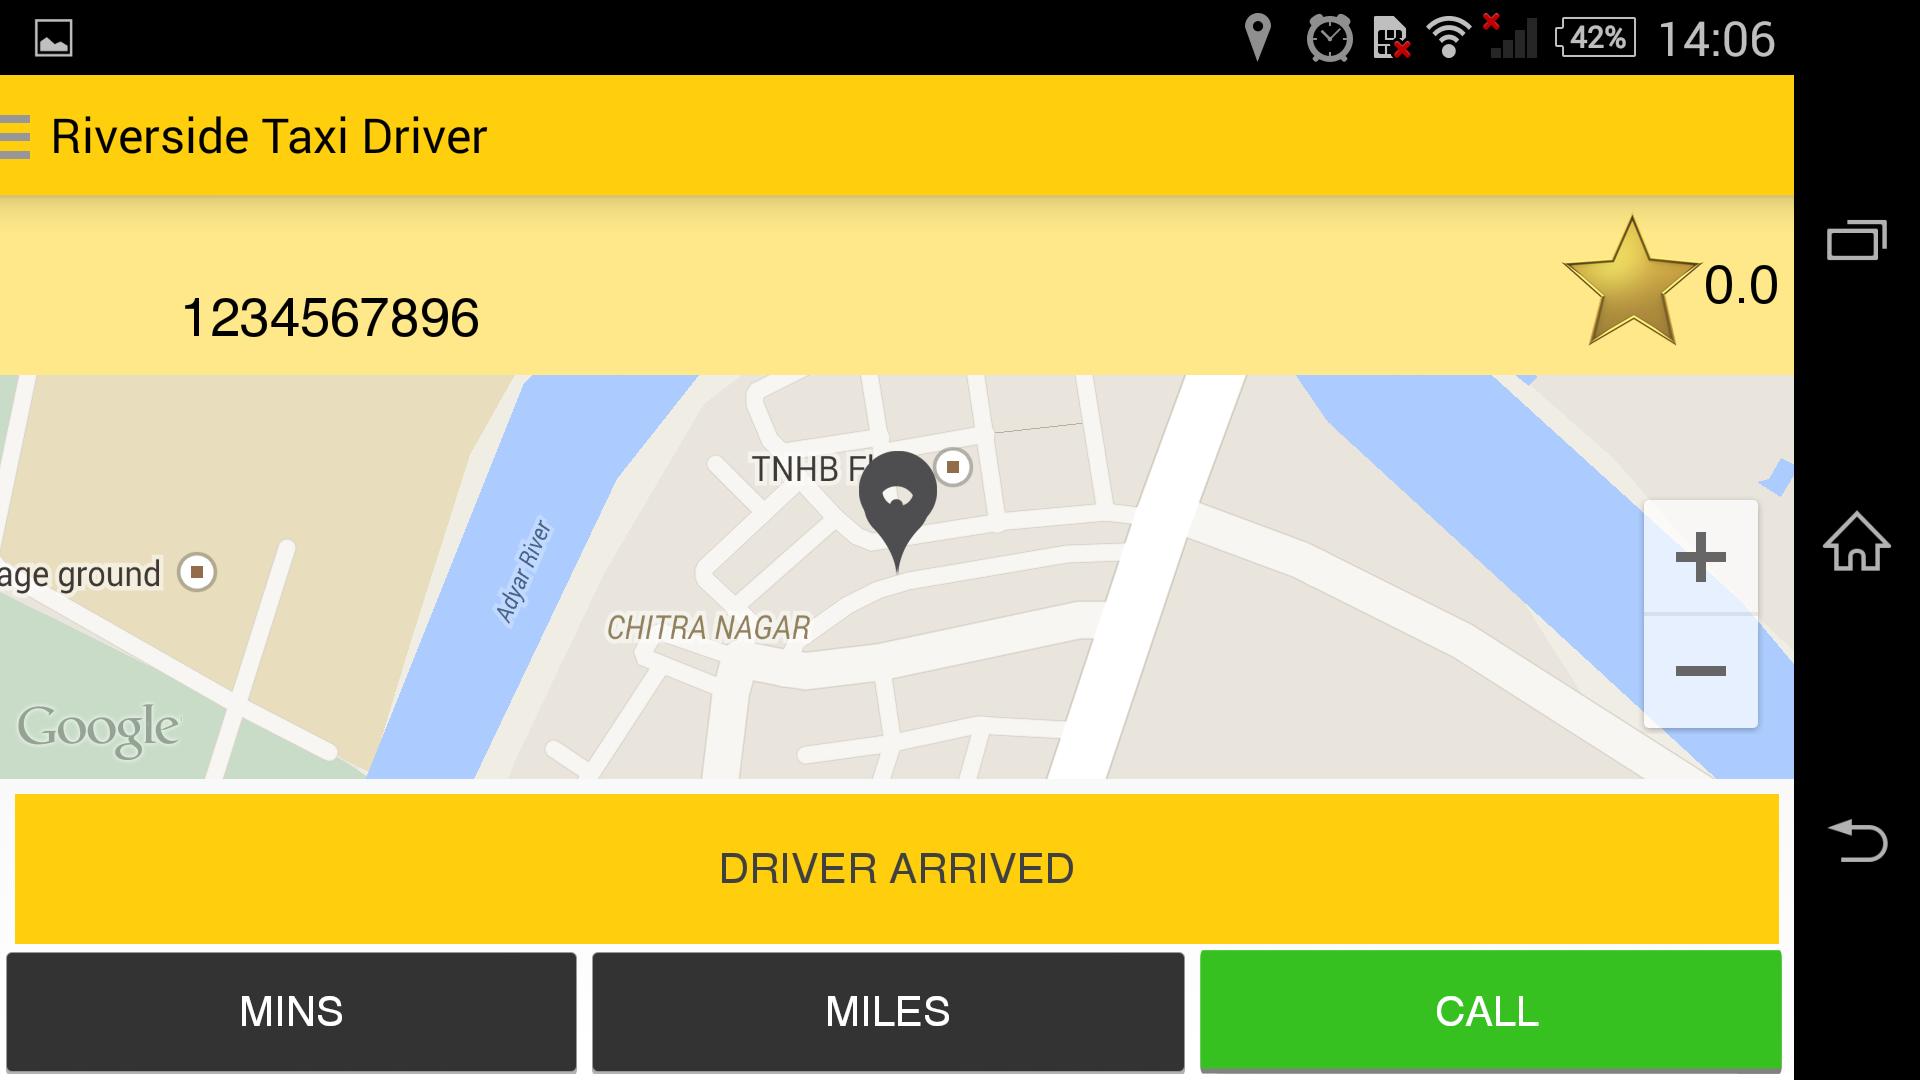 Taxi driver 4. Такси драйвер rfhnf. Как в приложении такси драйвер менять парки. Такси драйвер в каком городе находится. Не показывает карту города такси драйвер.